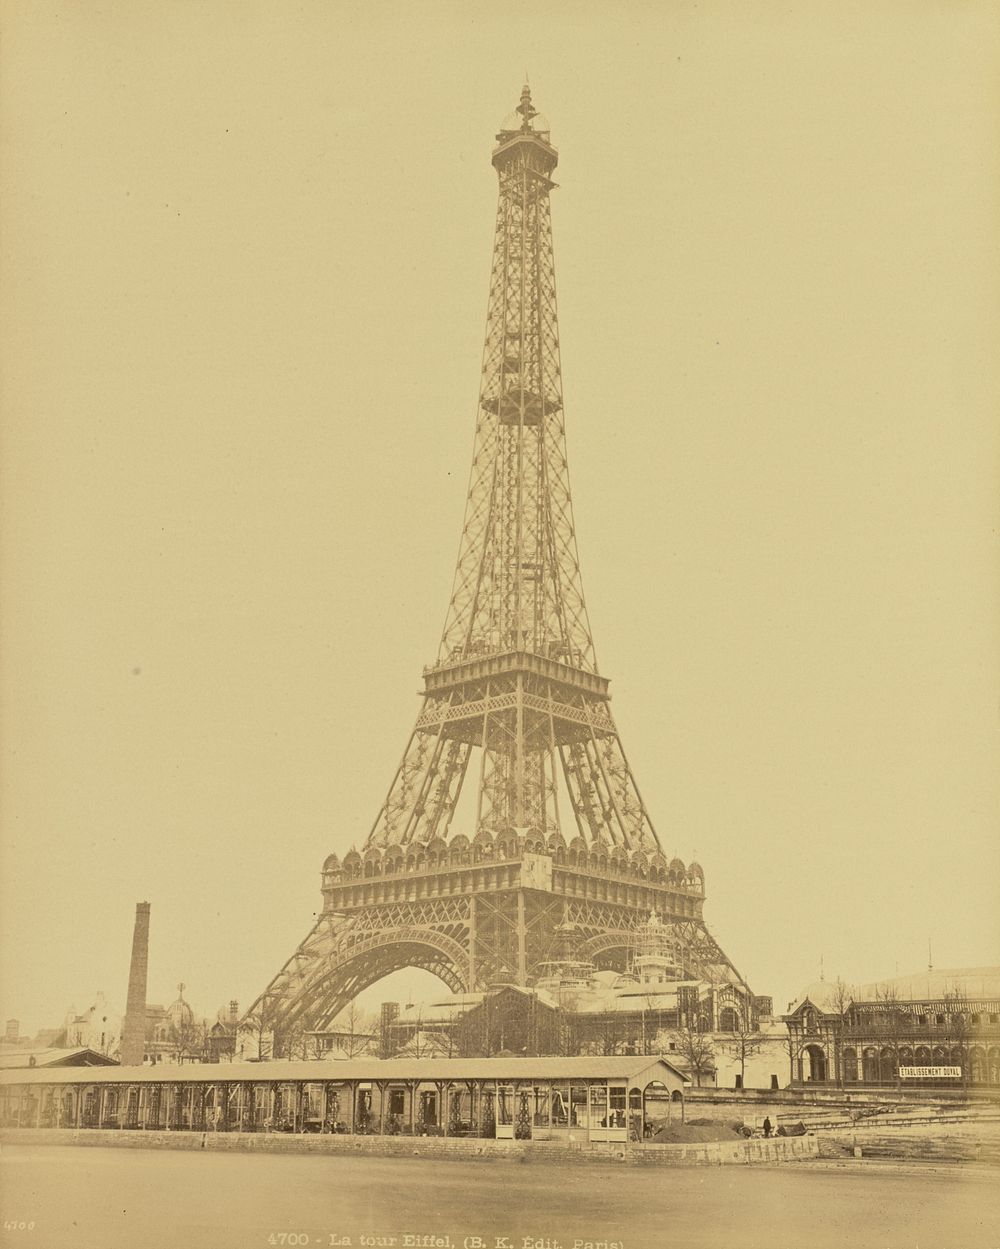 La tour Eiffel by Adolphe Block